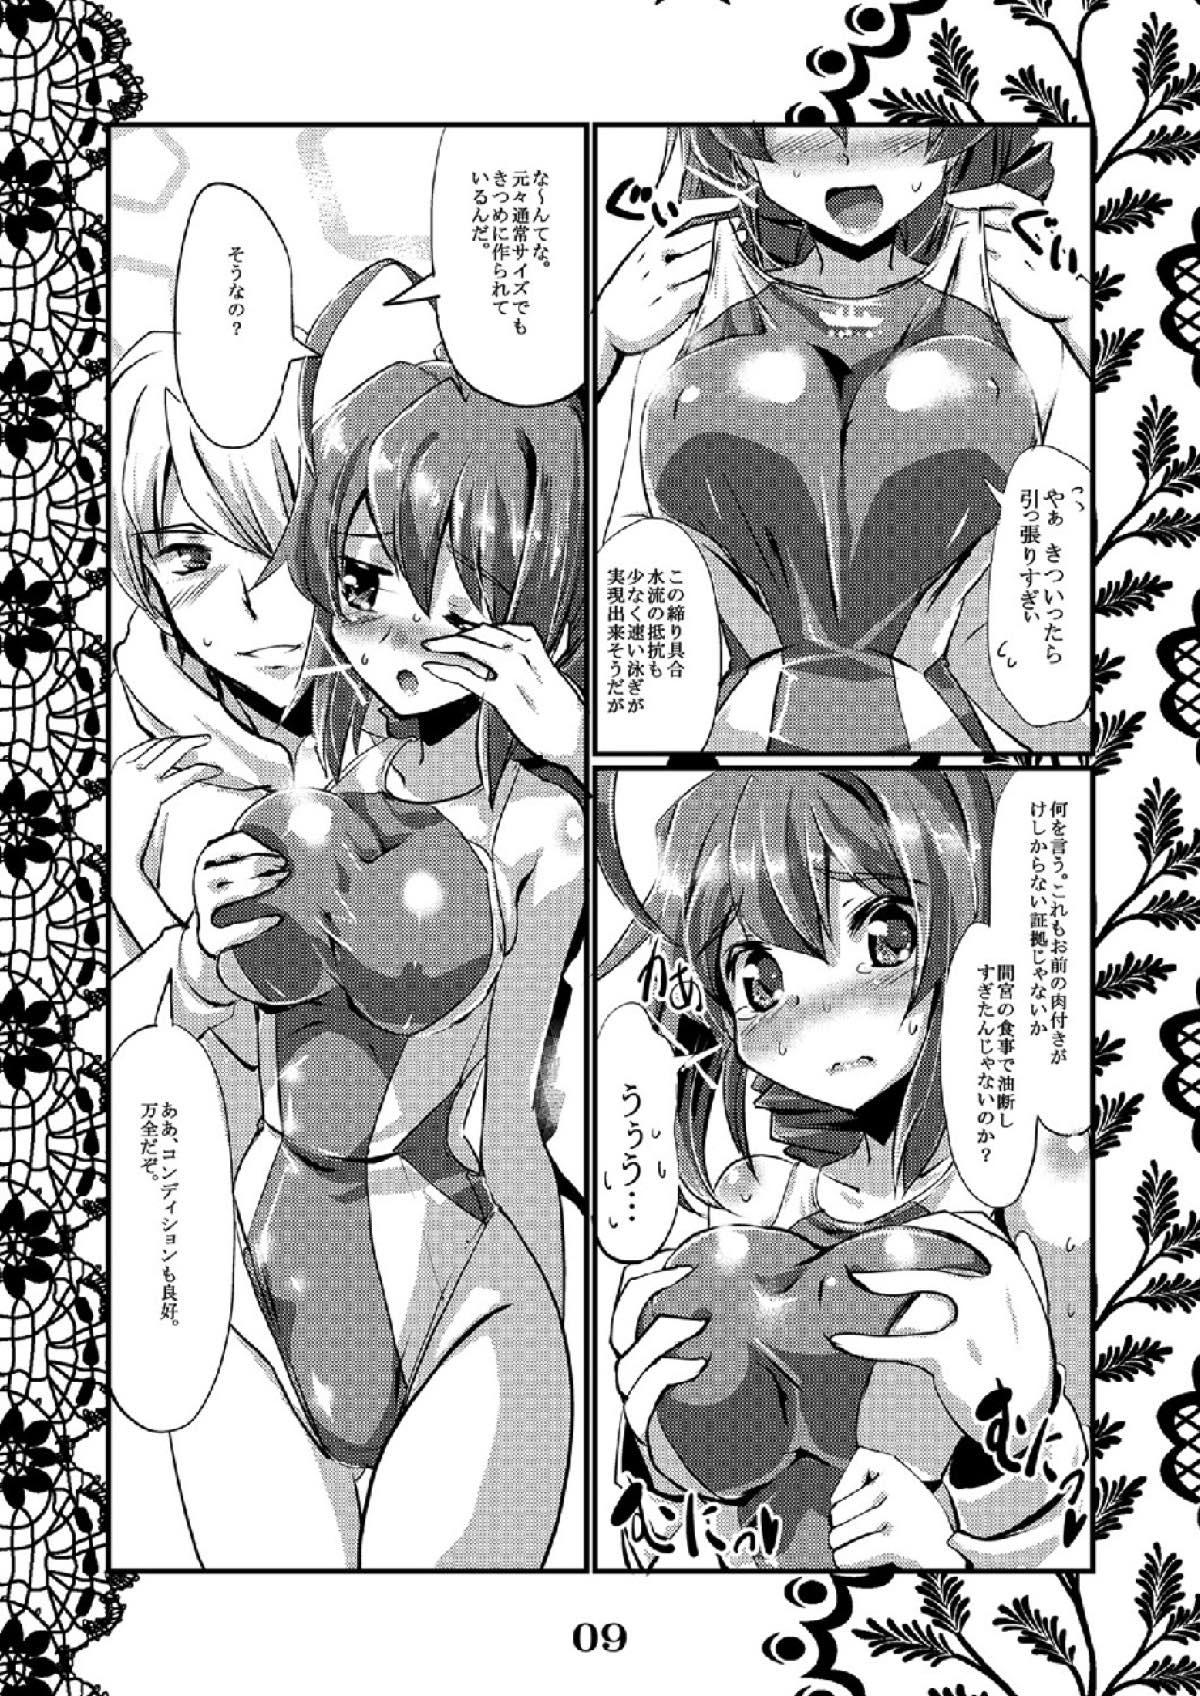 Exgirlfriend Rensou Harugatari 6 - Kantai collection Soft - Page 7